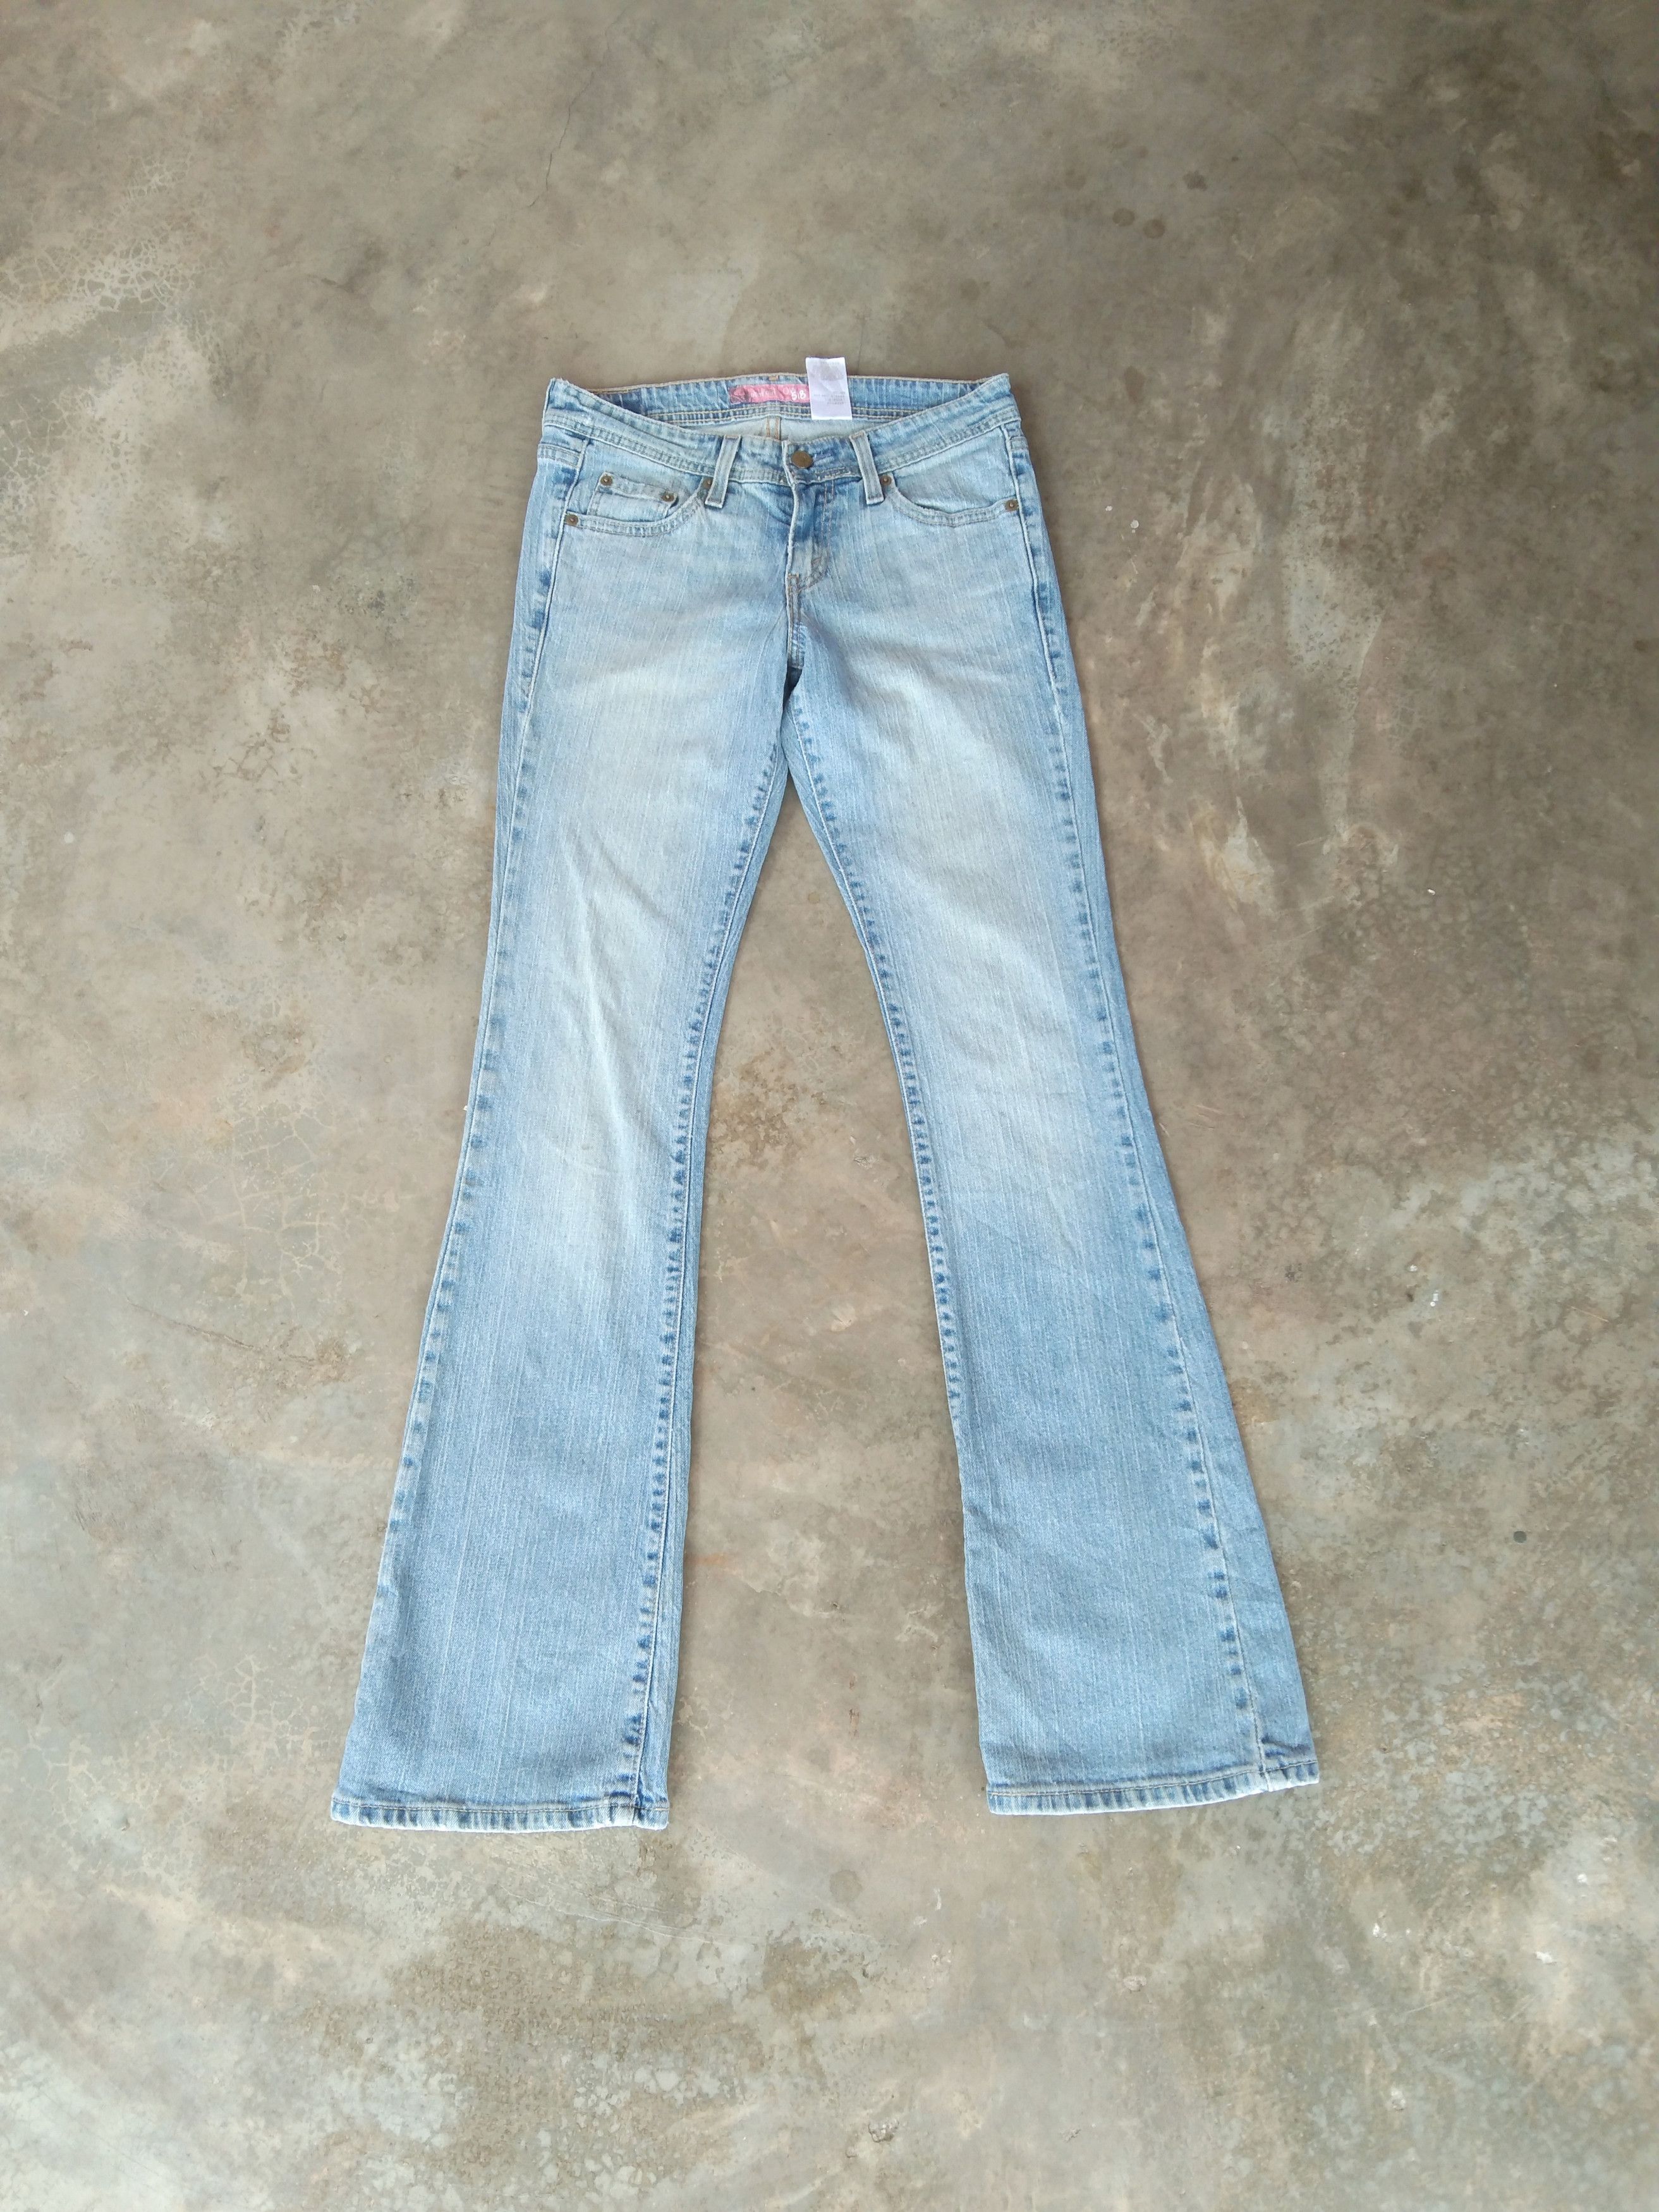 Vintage Vintage Levi's 518 Super Low Bootcut 28x33 Light Wash Jeans ...